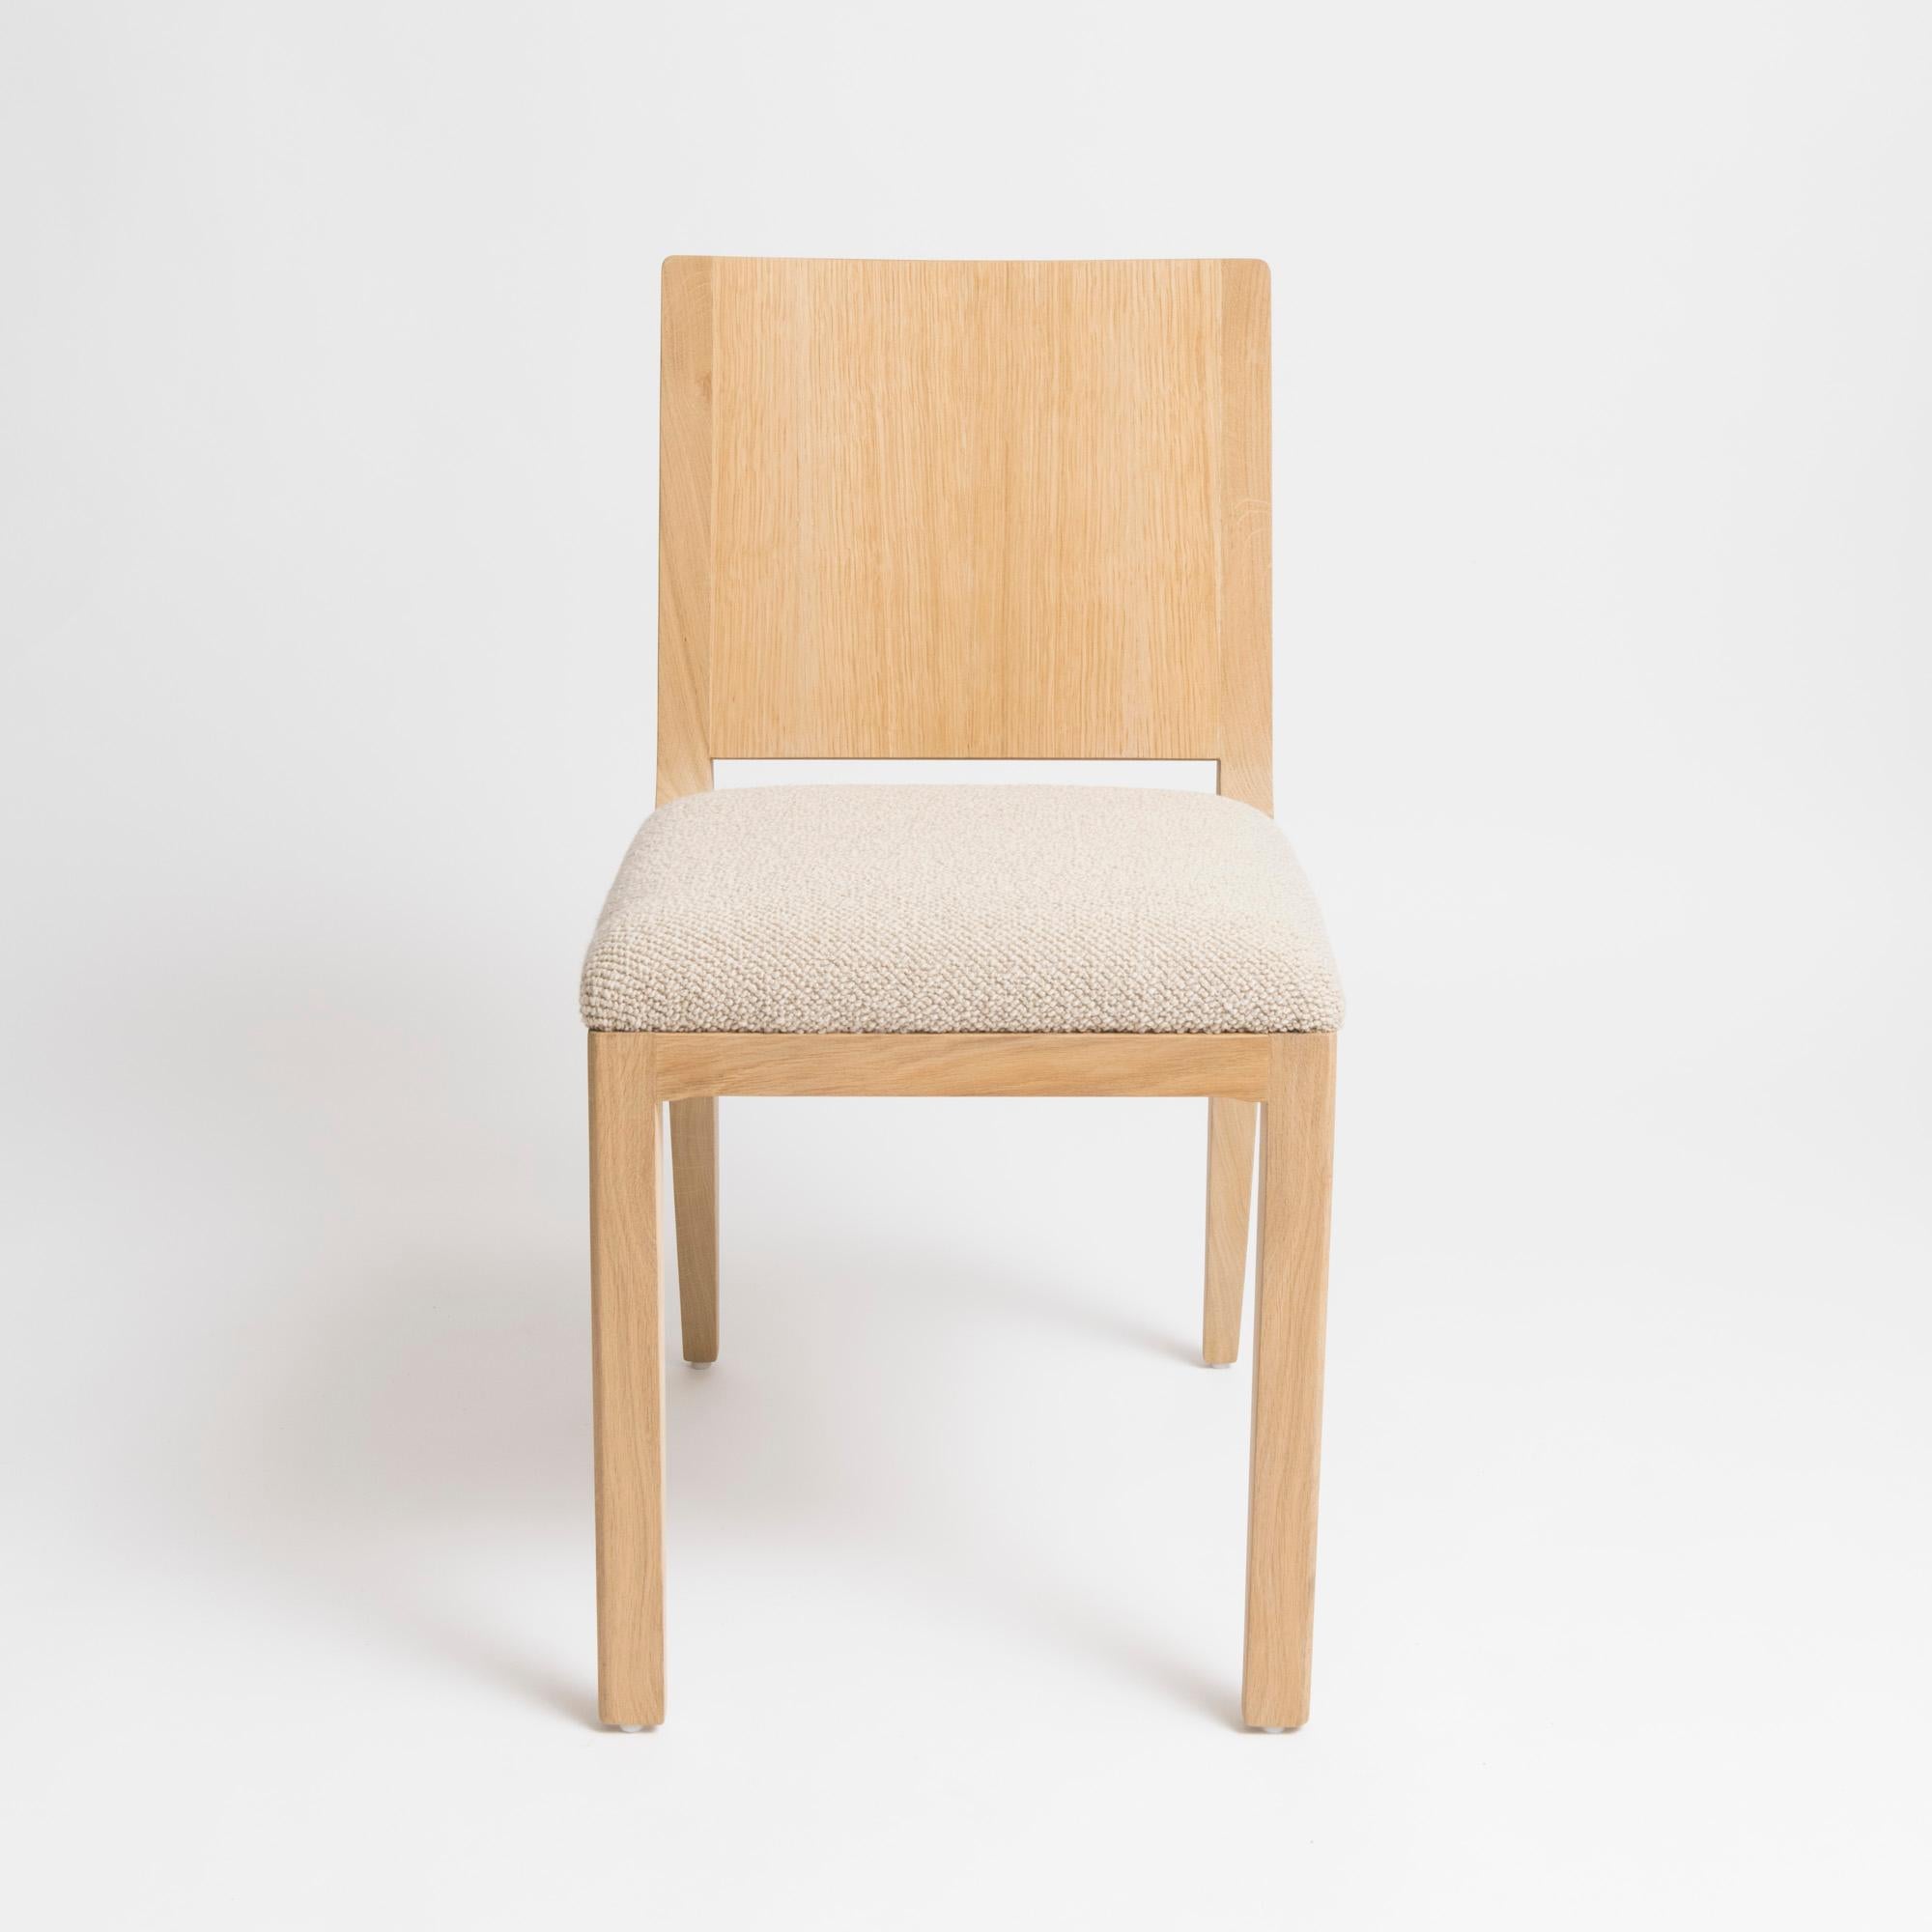 Minimalistischer, moderner Designstuhl des Pariser Studios mjiila. Der om5.1 ist ein moderner, gepolsterter Stuhl der Spitzenklasse, der von einem erfahrenen Tischler handgefertigt wird. Erhältlich in geseifter, natürlicher französischer Eiche,